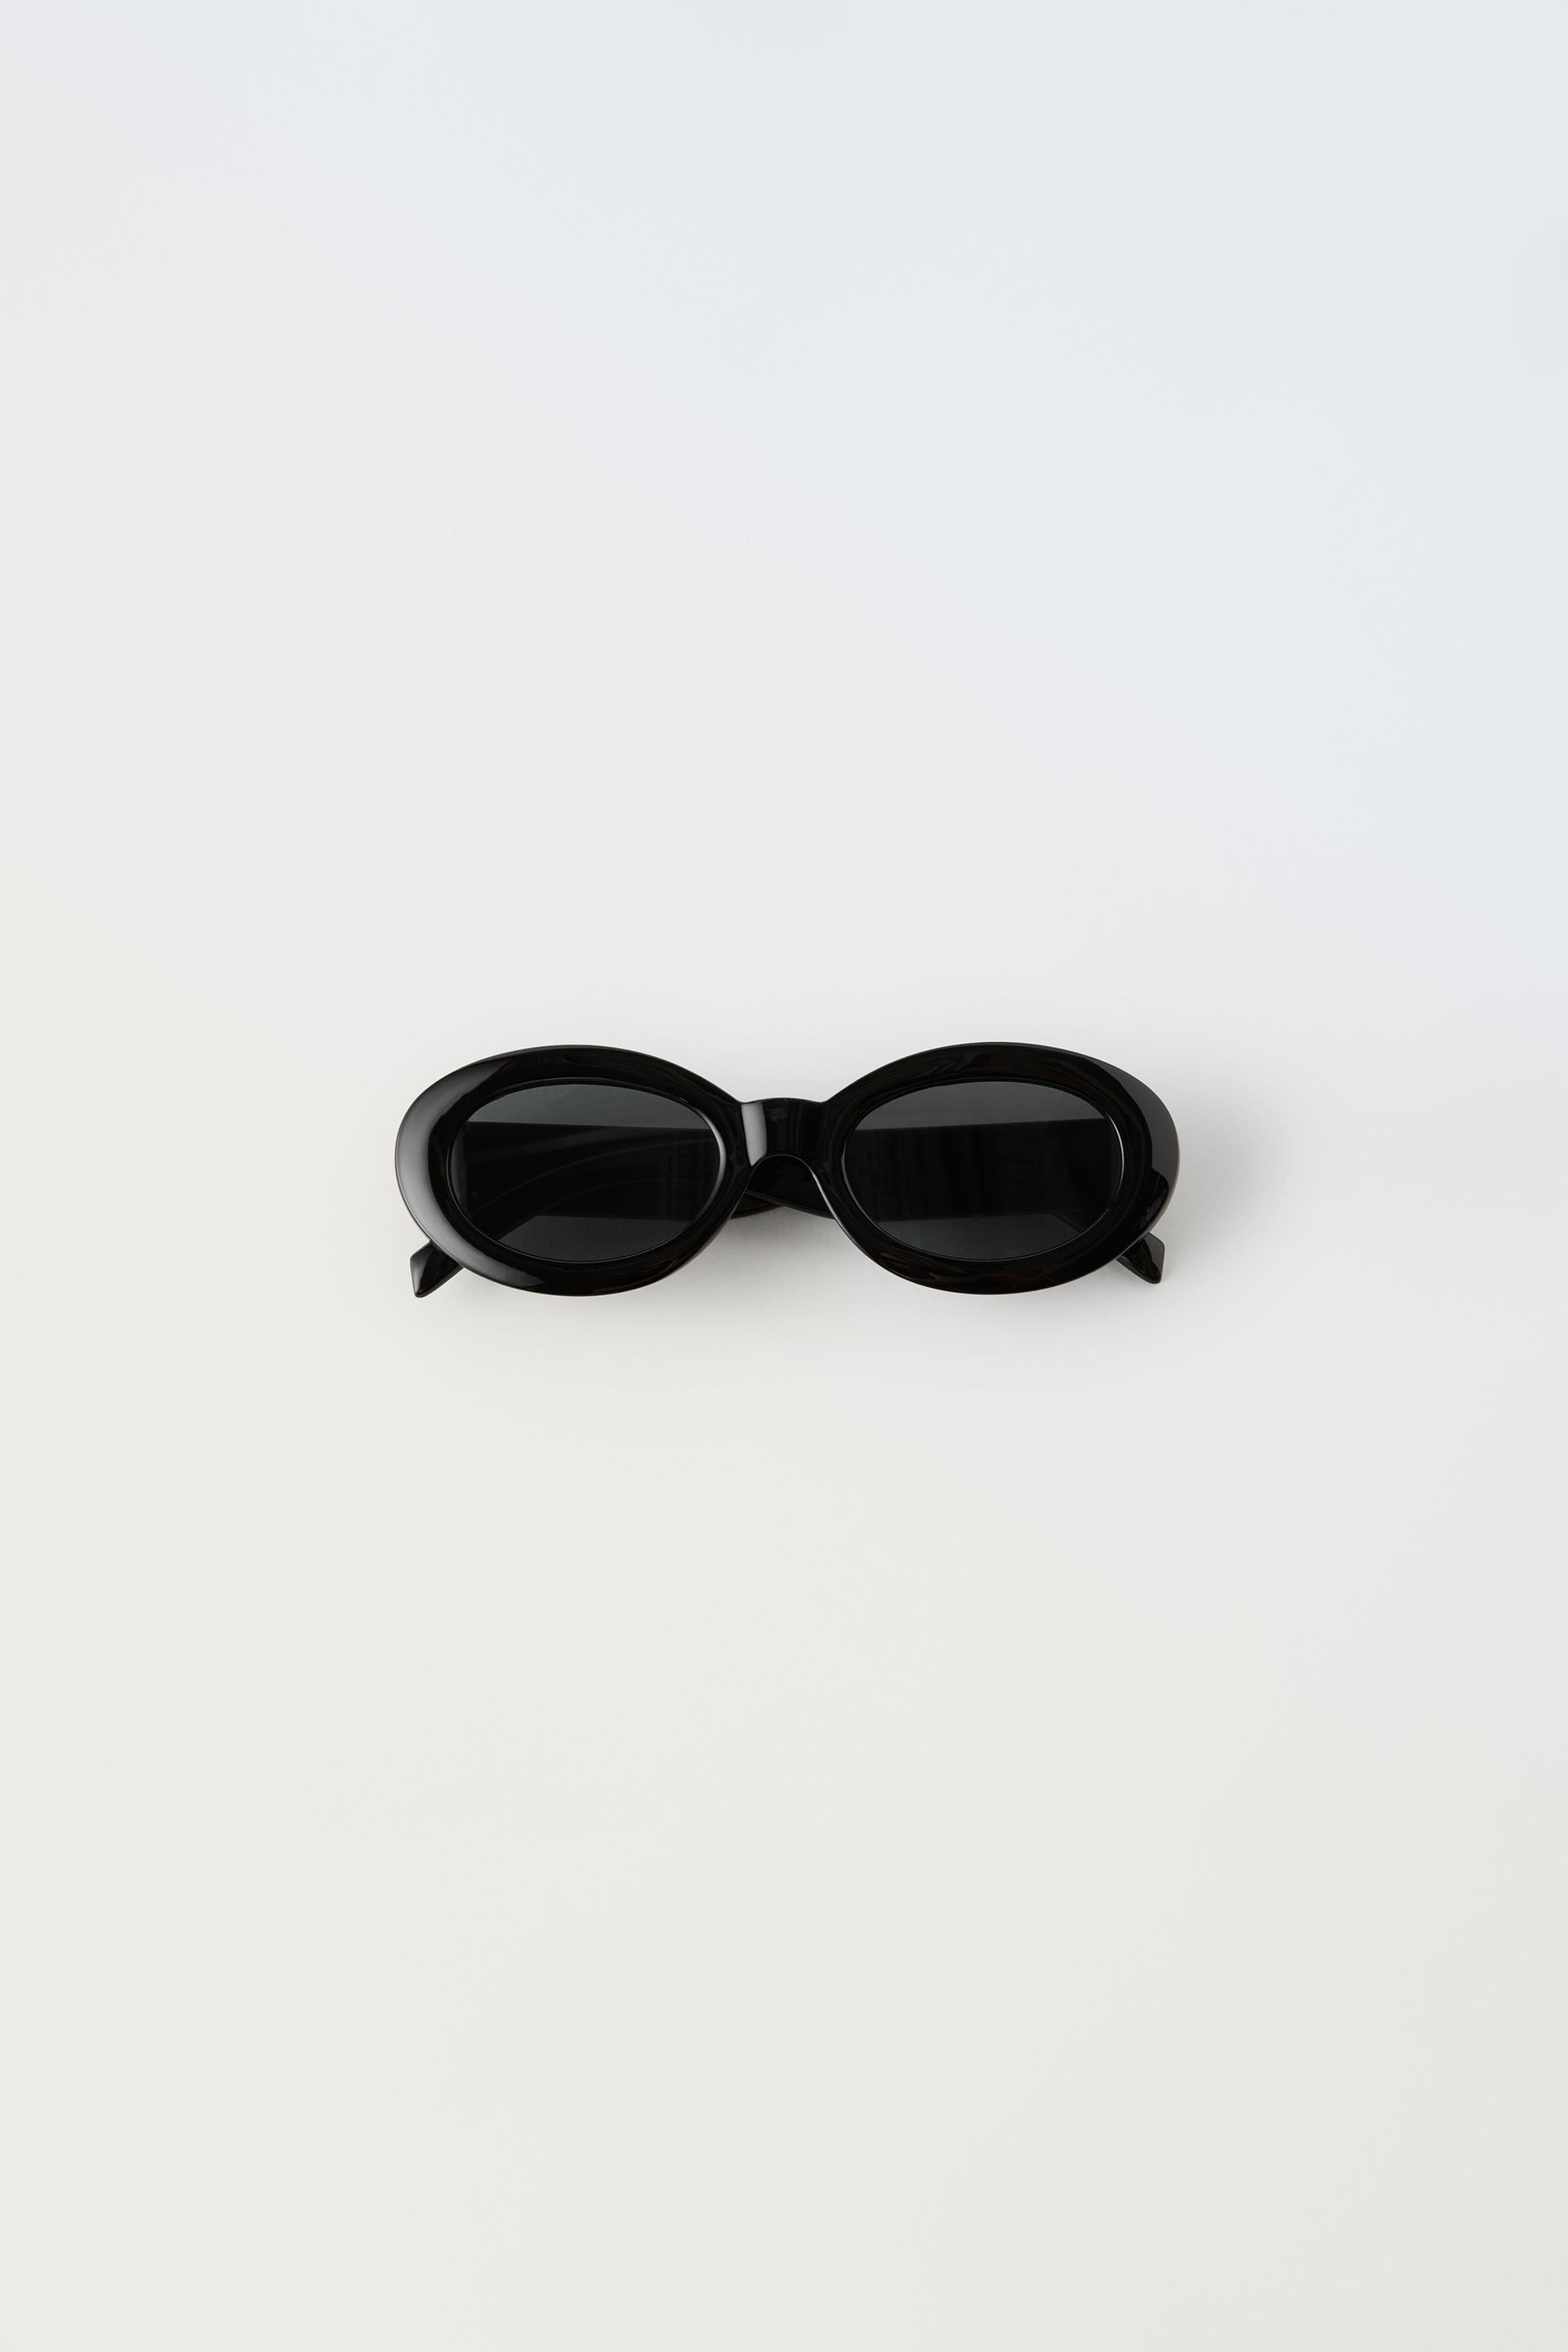 Детские солнцезащитные очки Zara Oval Resin Frame, черный солнцезащитные очки zara metal frame черный